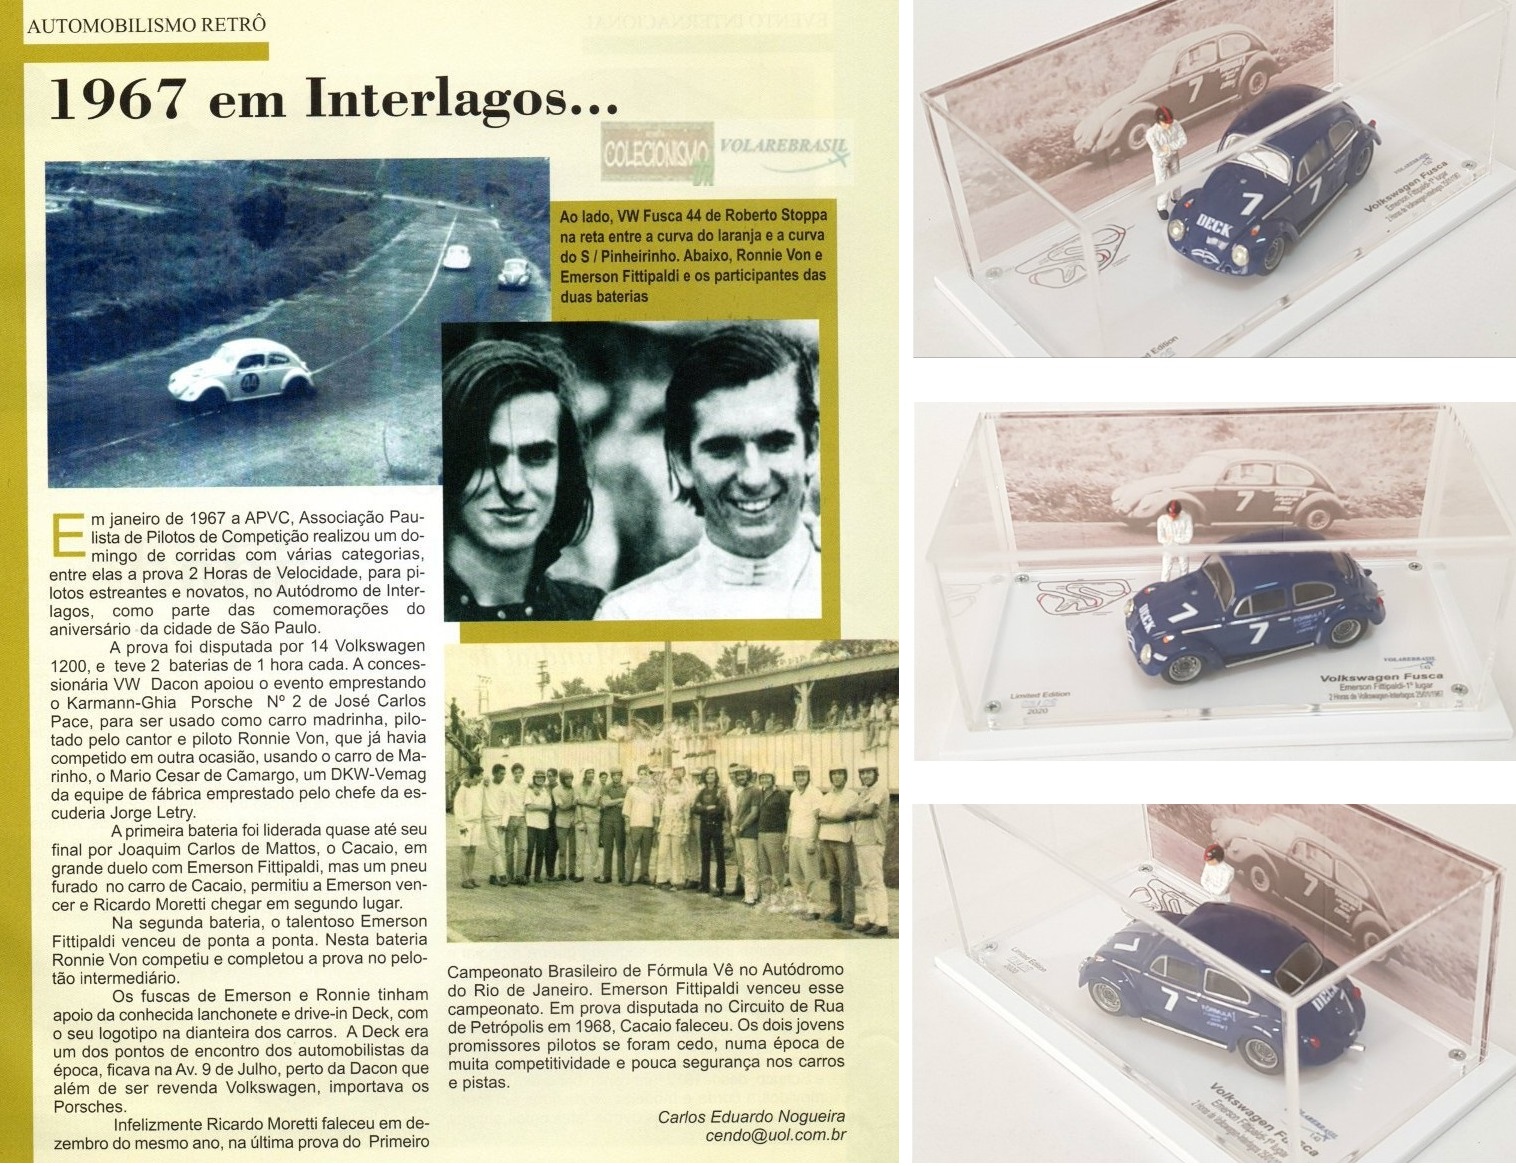 VW FUSCA EMERSON FITTIPALDI / RONNIE VON GP 2H INTERLAGOS  1967